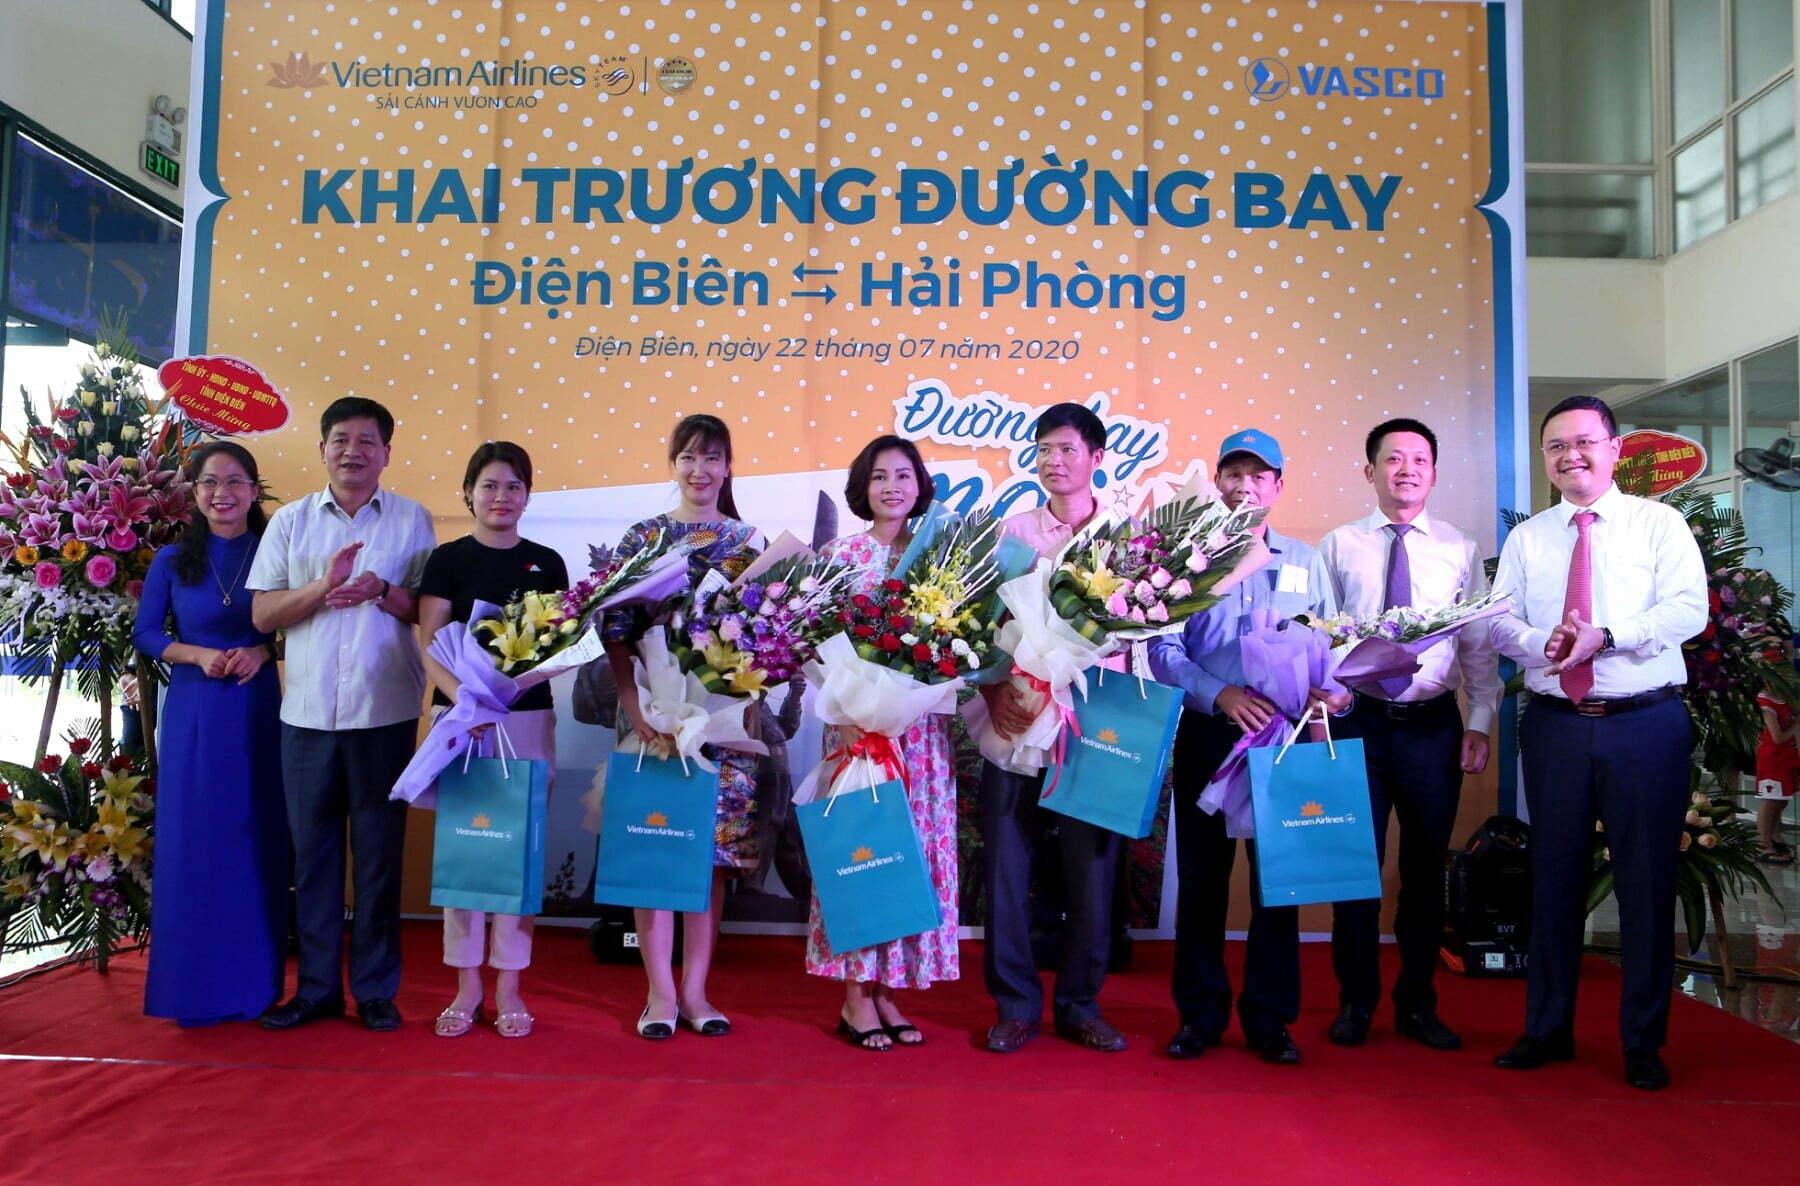 VNA khai trương 2 đường bay mới Đà Lạt - Phú Quốc và Điện Biên - Hải Phòng